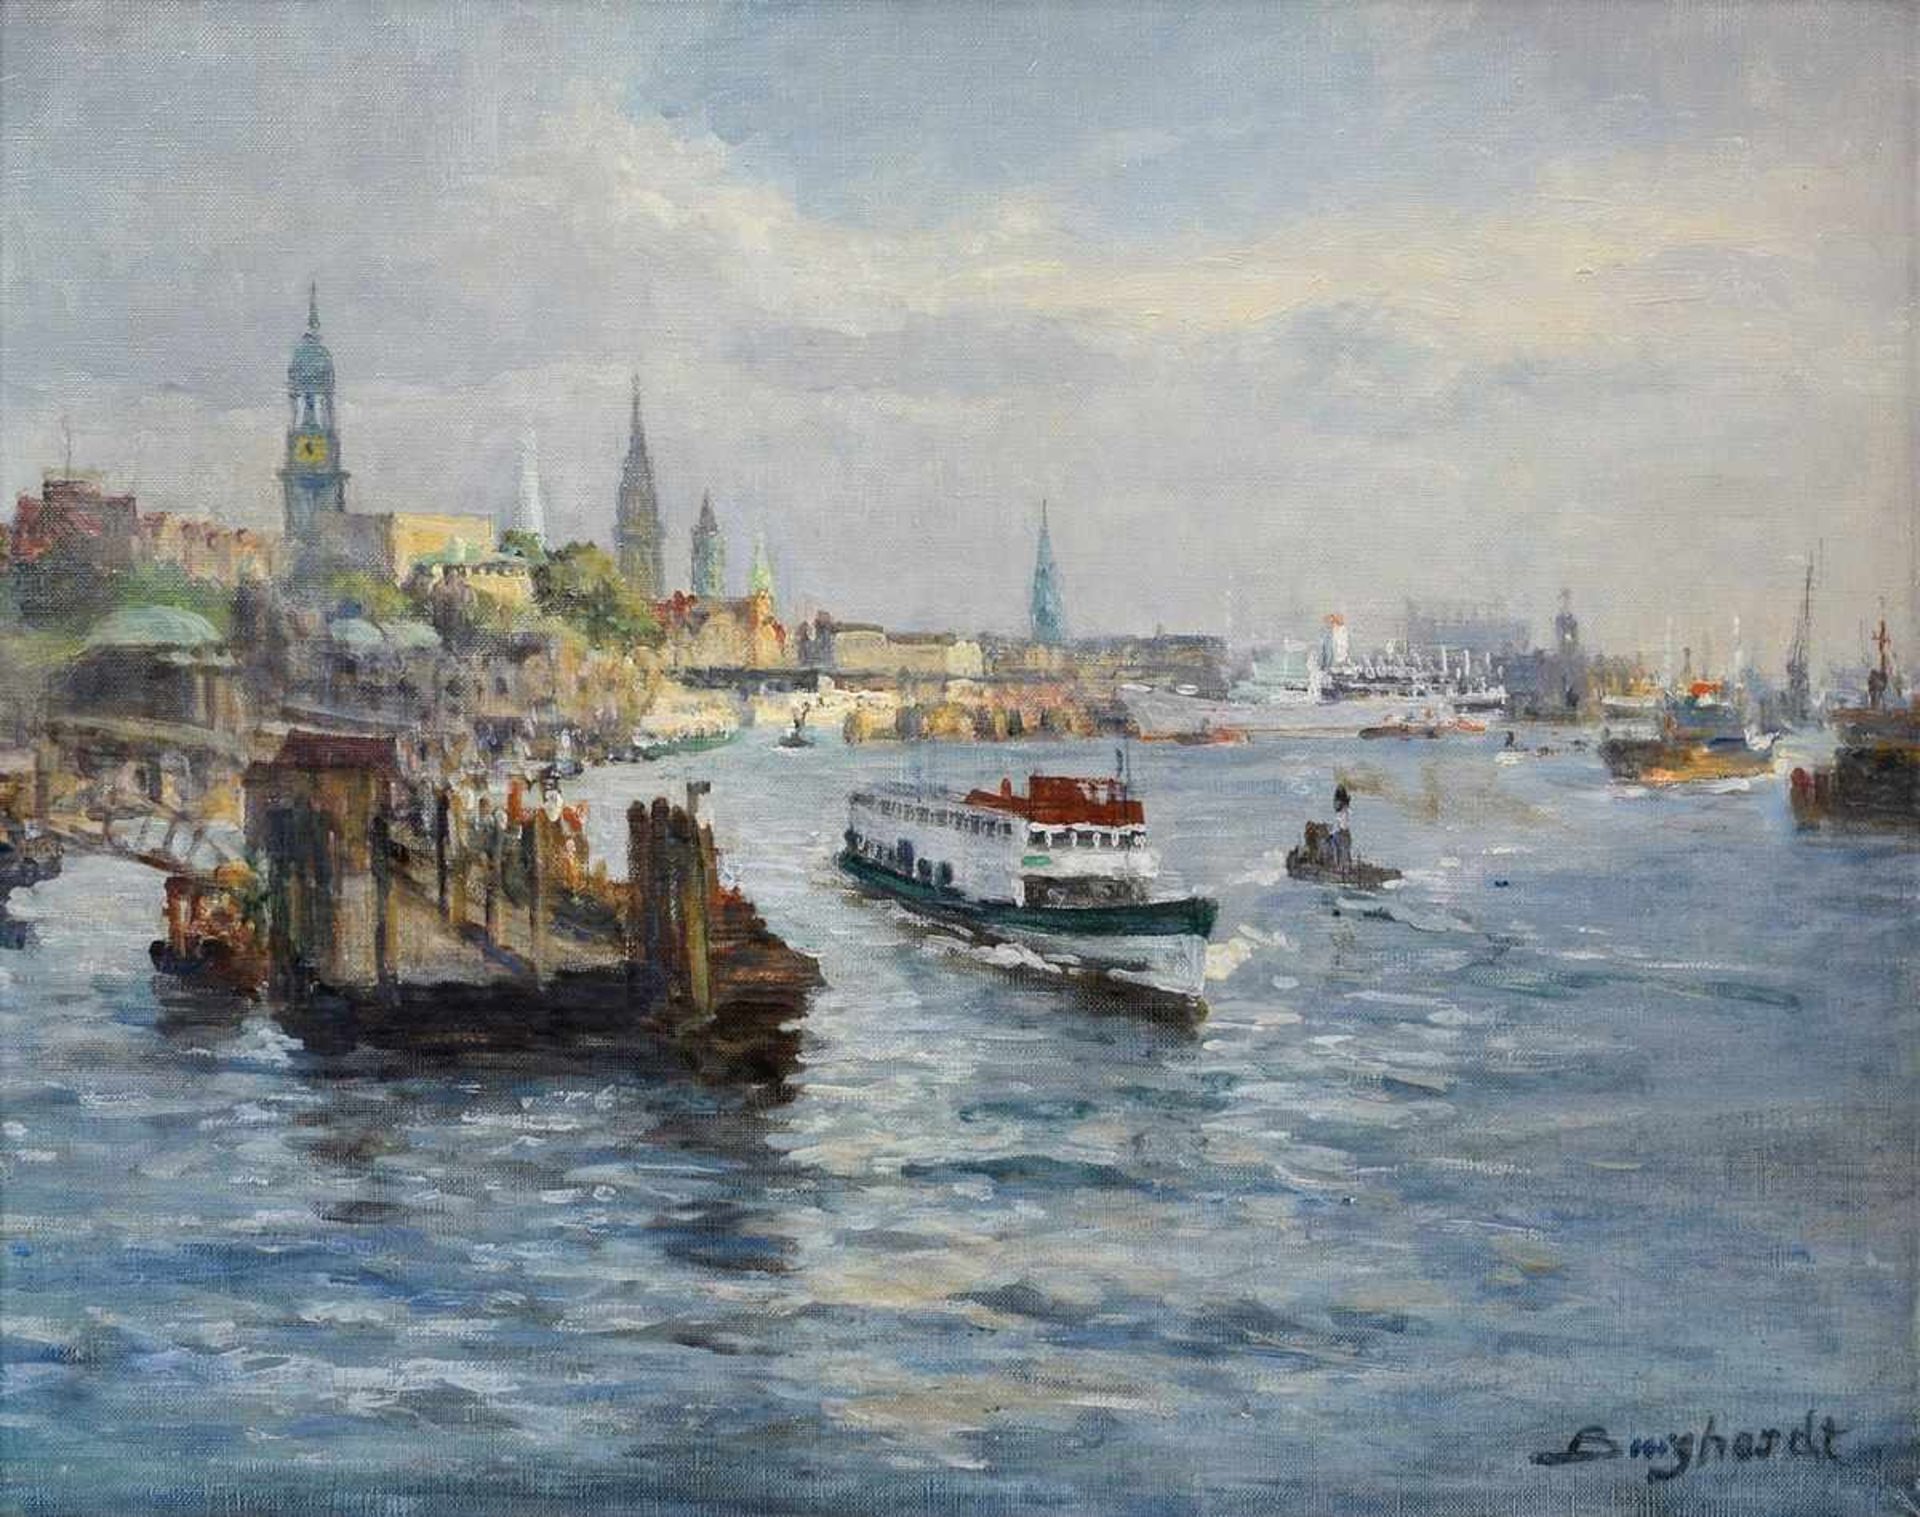 Burghardt, Paul Gustav (1890-1970) „Hamburger Hafen“, u.r. sign., rückseitig Galeriestempel "